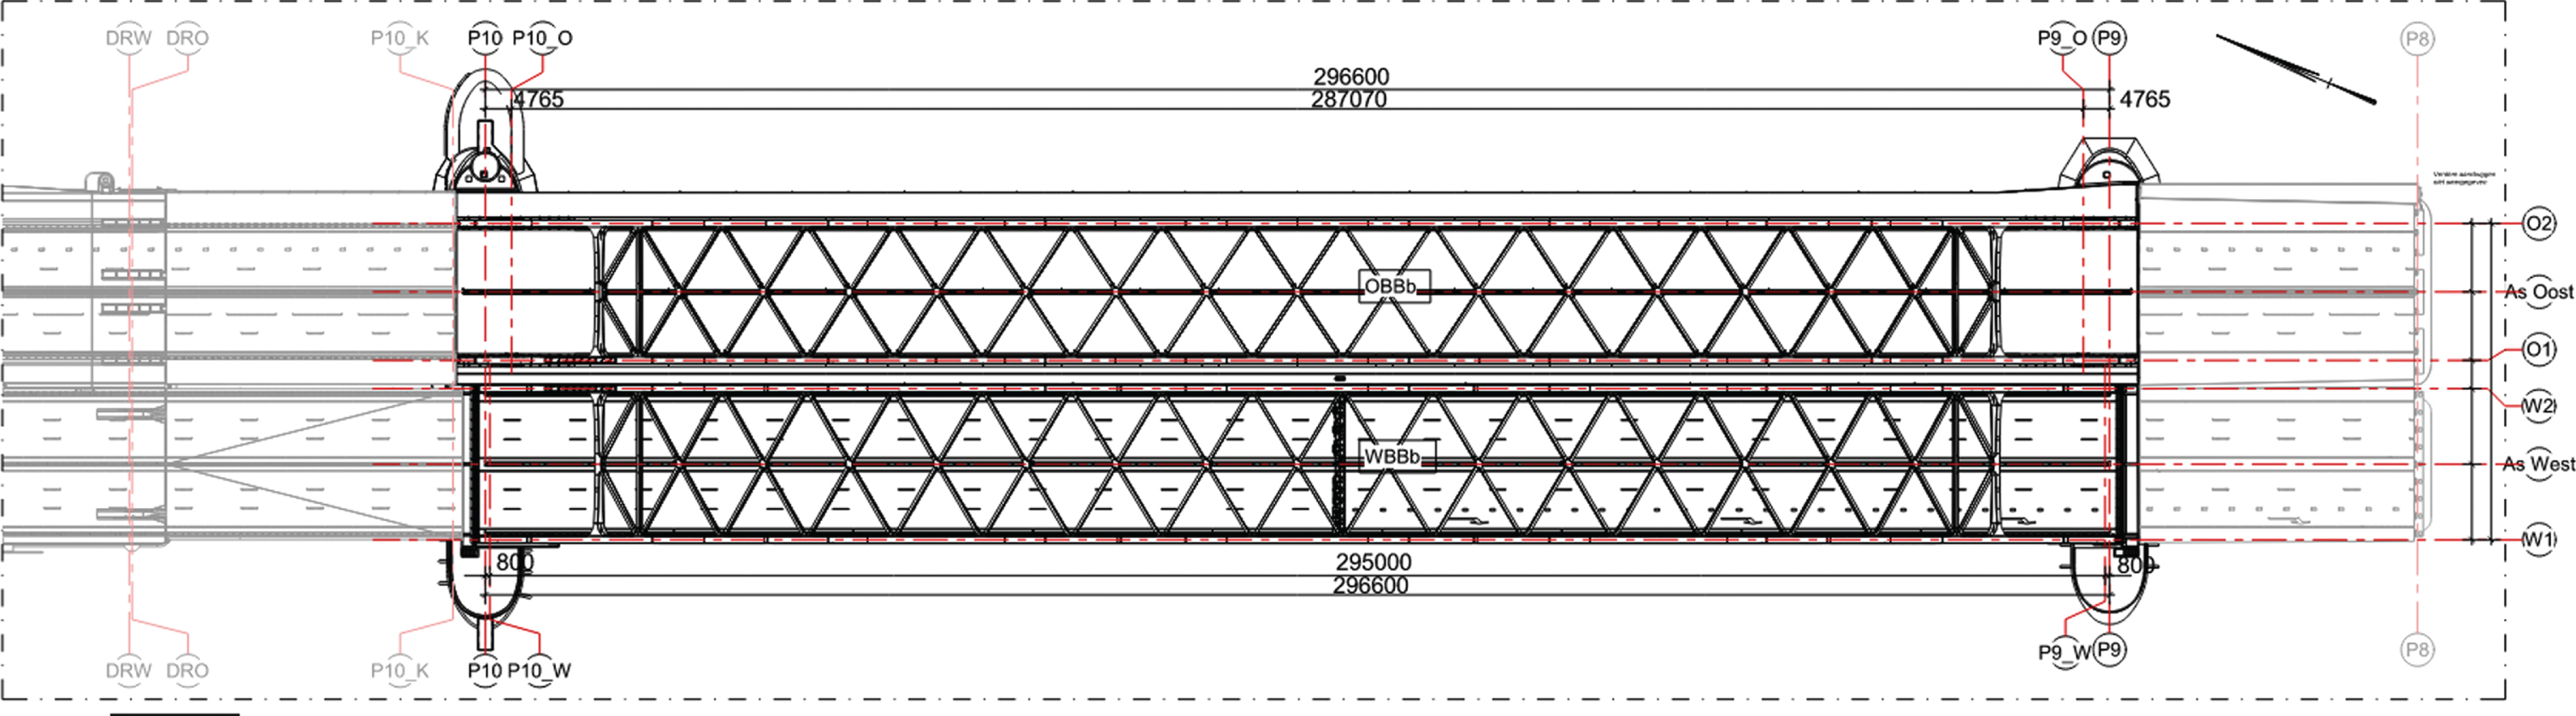 Plan of the Van Brienenoord Bridge existing situation.